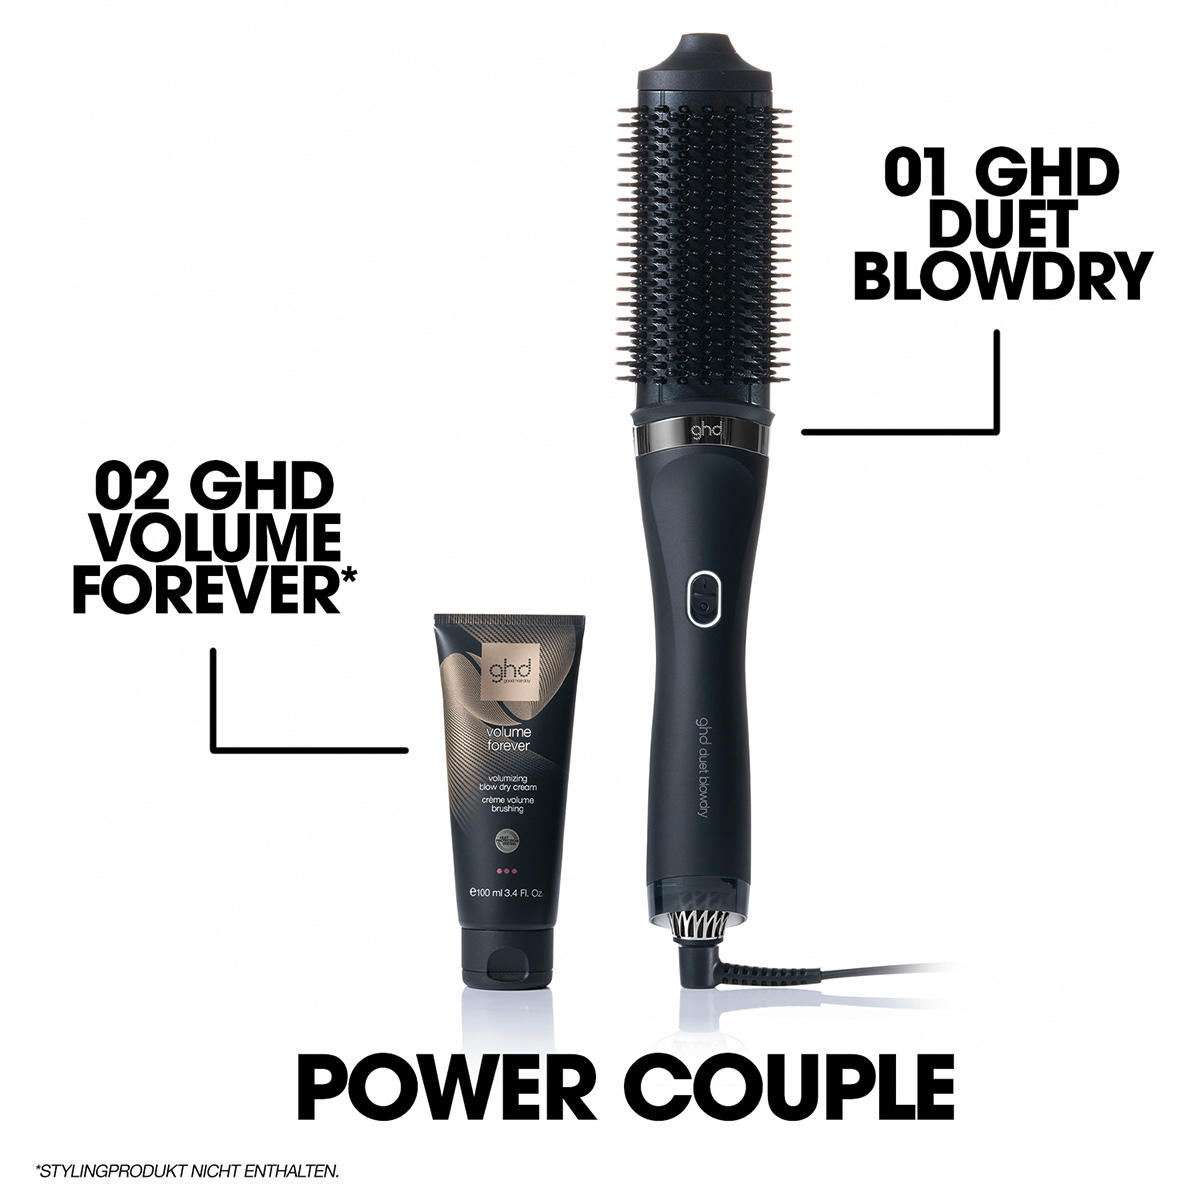 ghd duet blowdry Hair Dryer Brush negro - 10